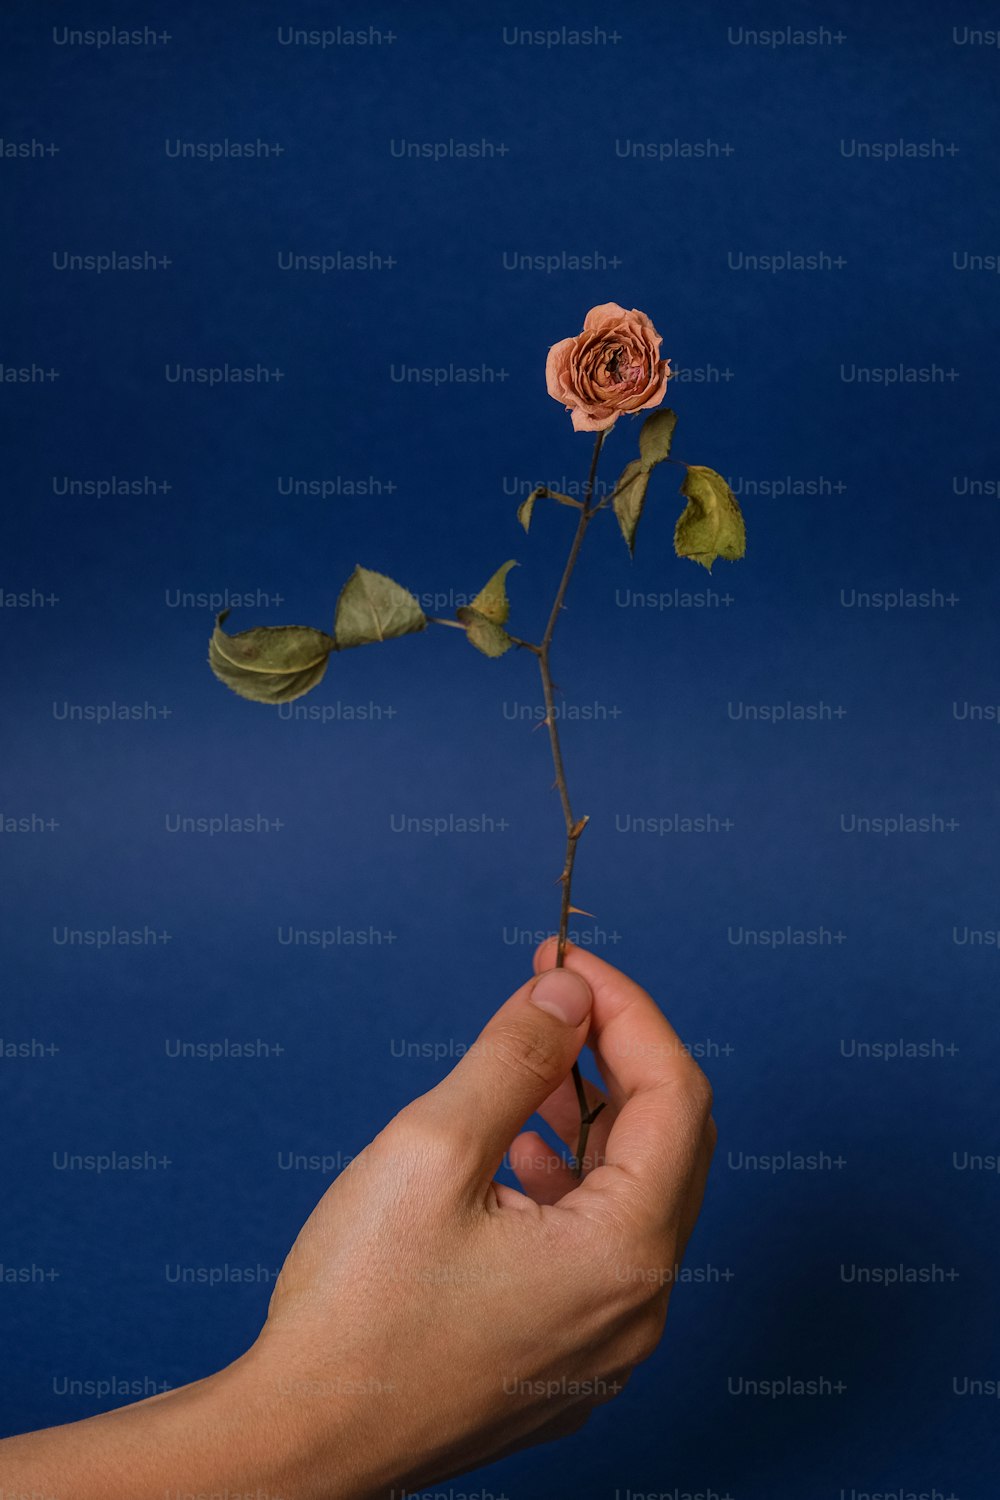 Una persona sosteniendo una rosa en la mano